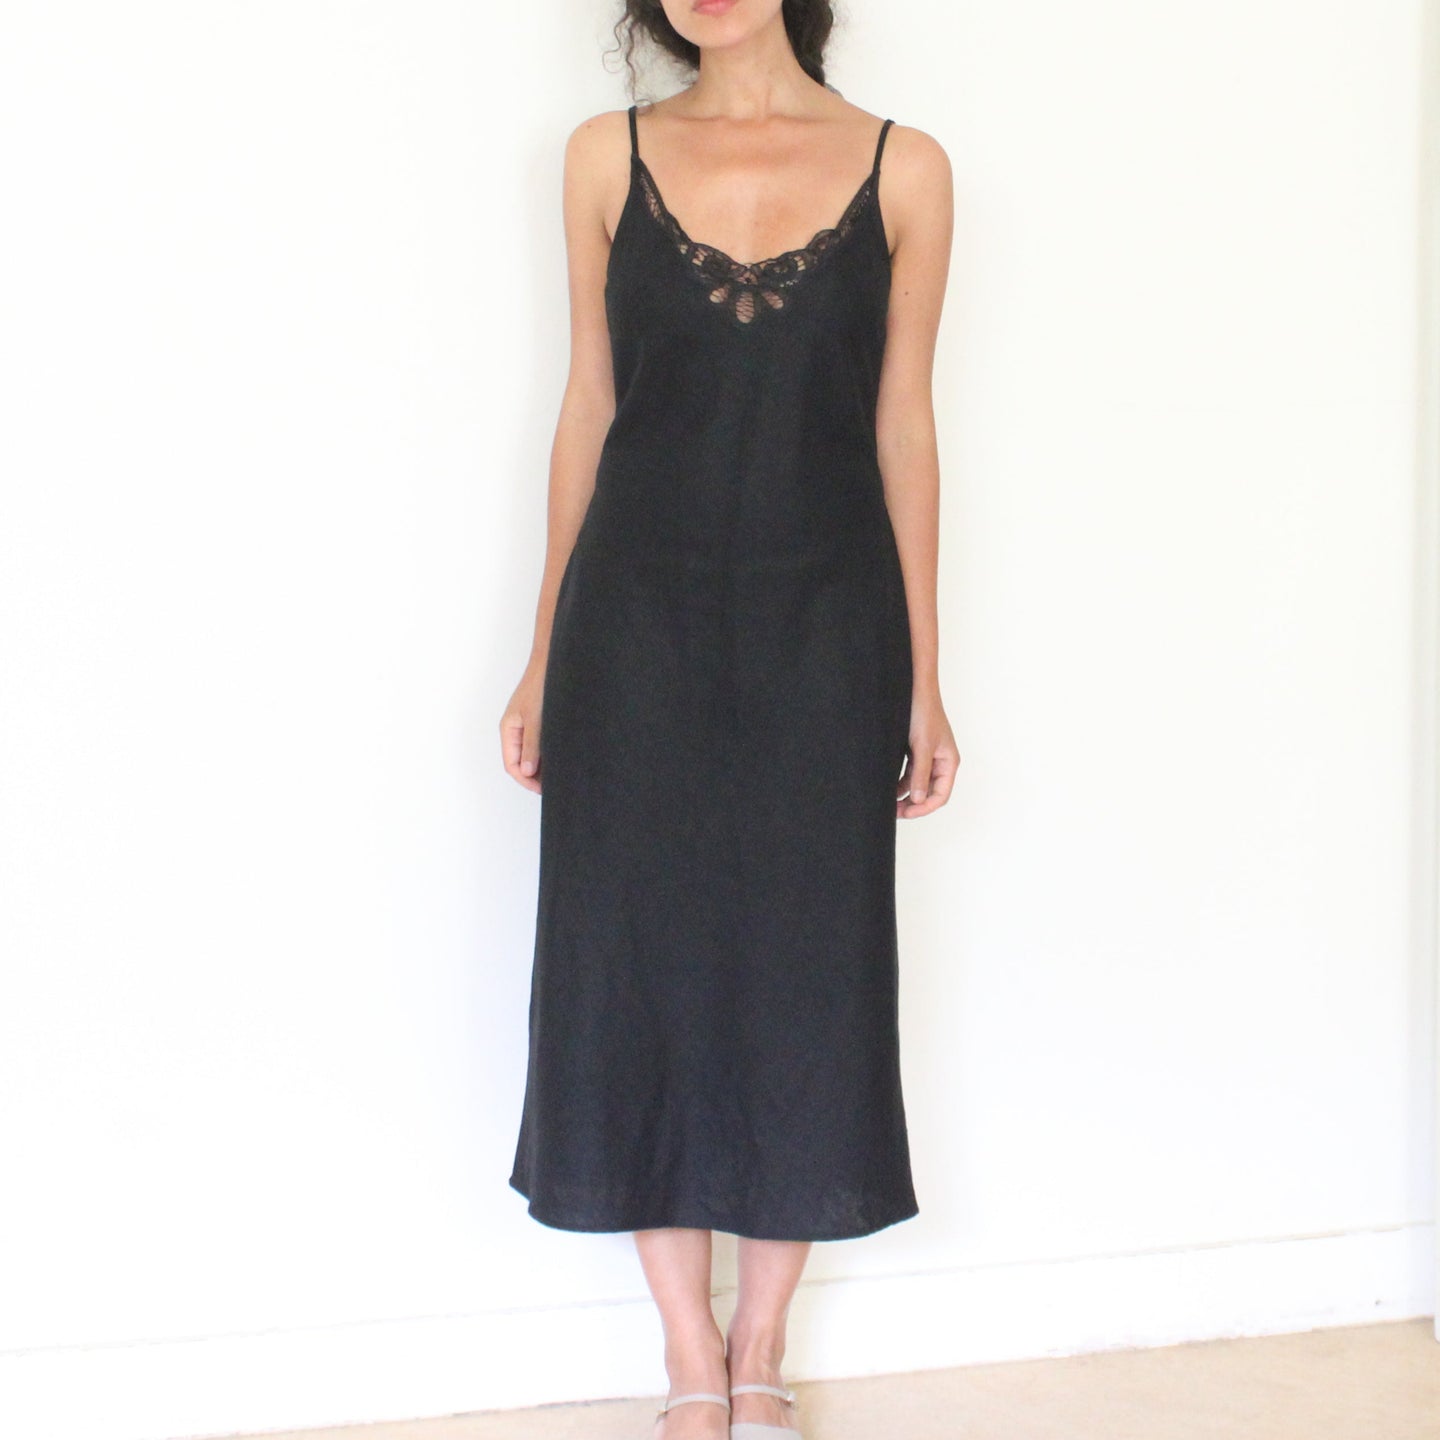 Vintage black linen dress, size S/M